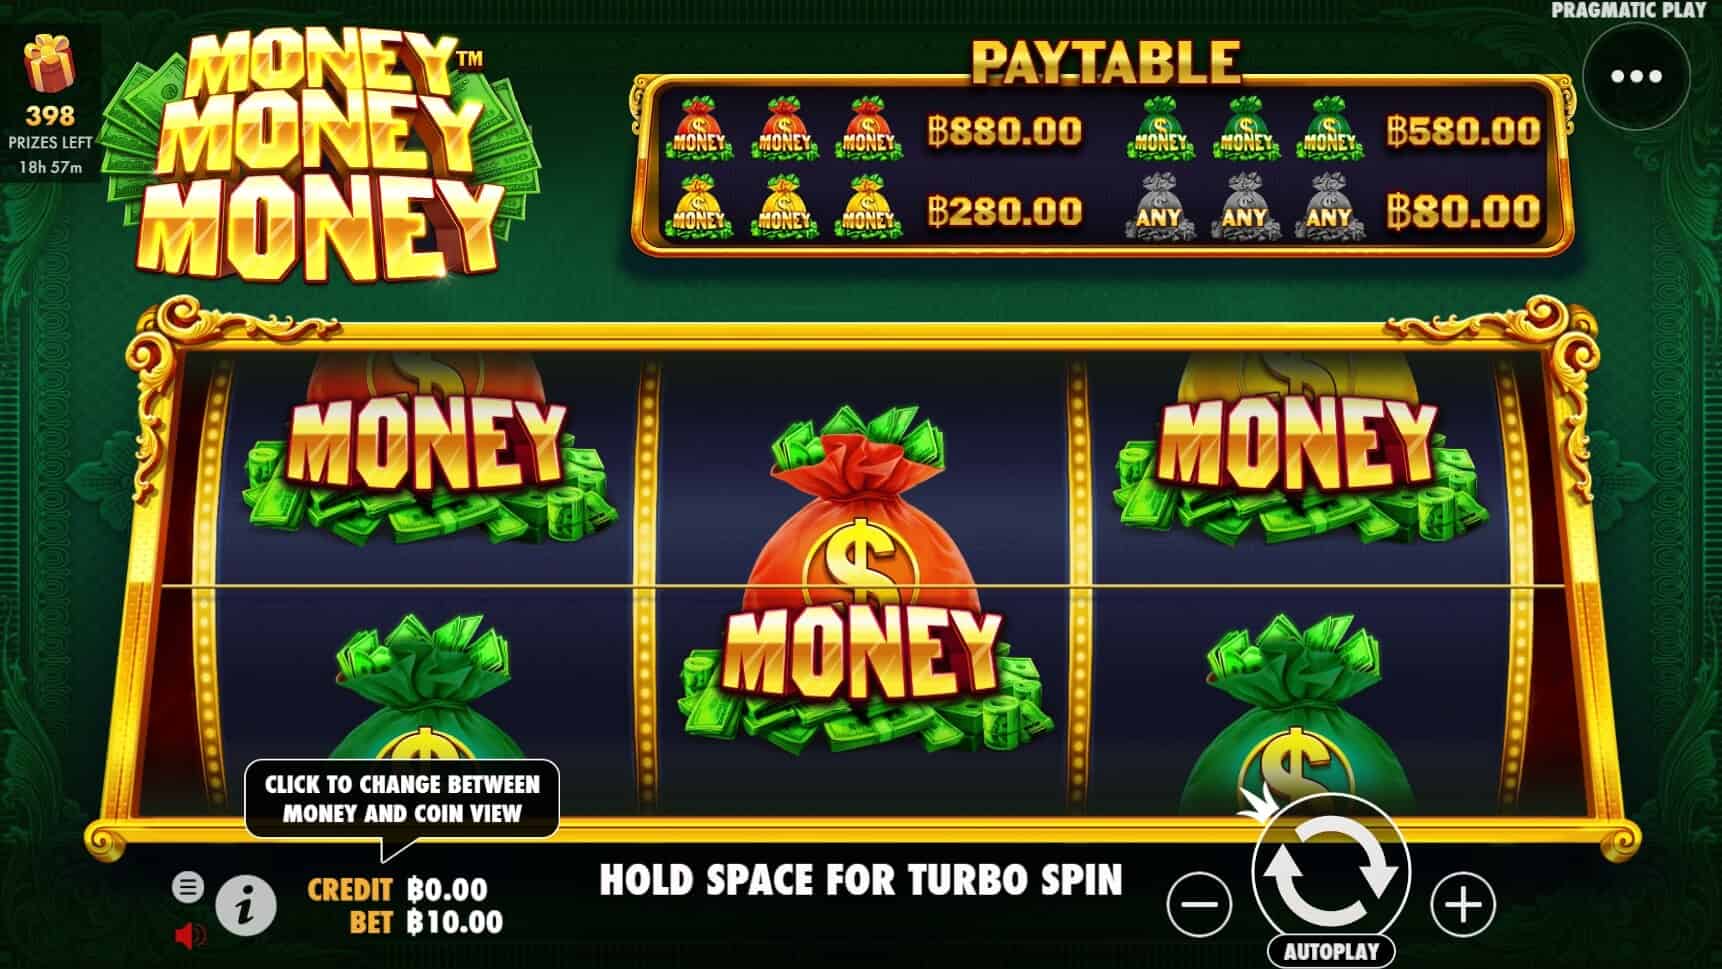 Money Money Money เกมสล็อต เว็บตรง จากค่าย Pragmatic Play โจ๊กเกอร์ 888